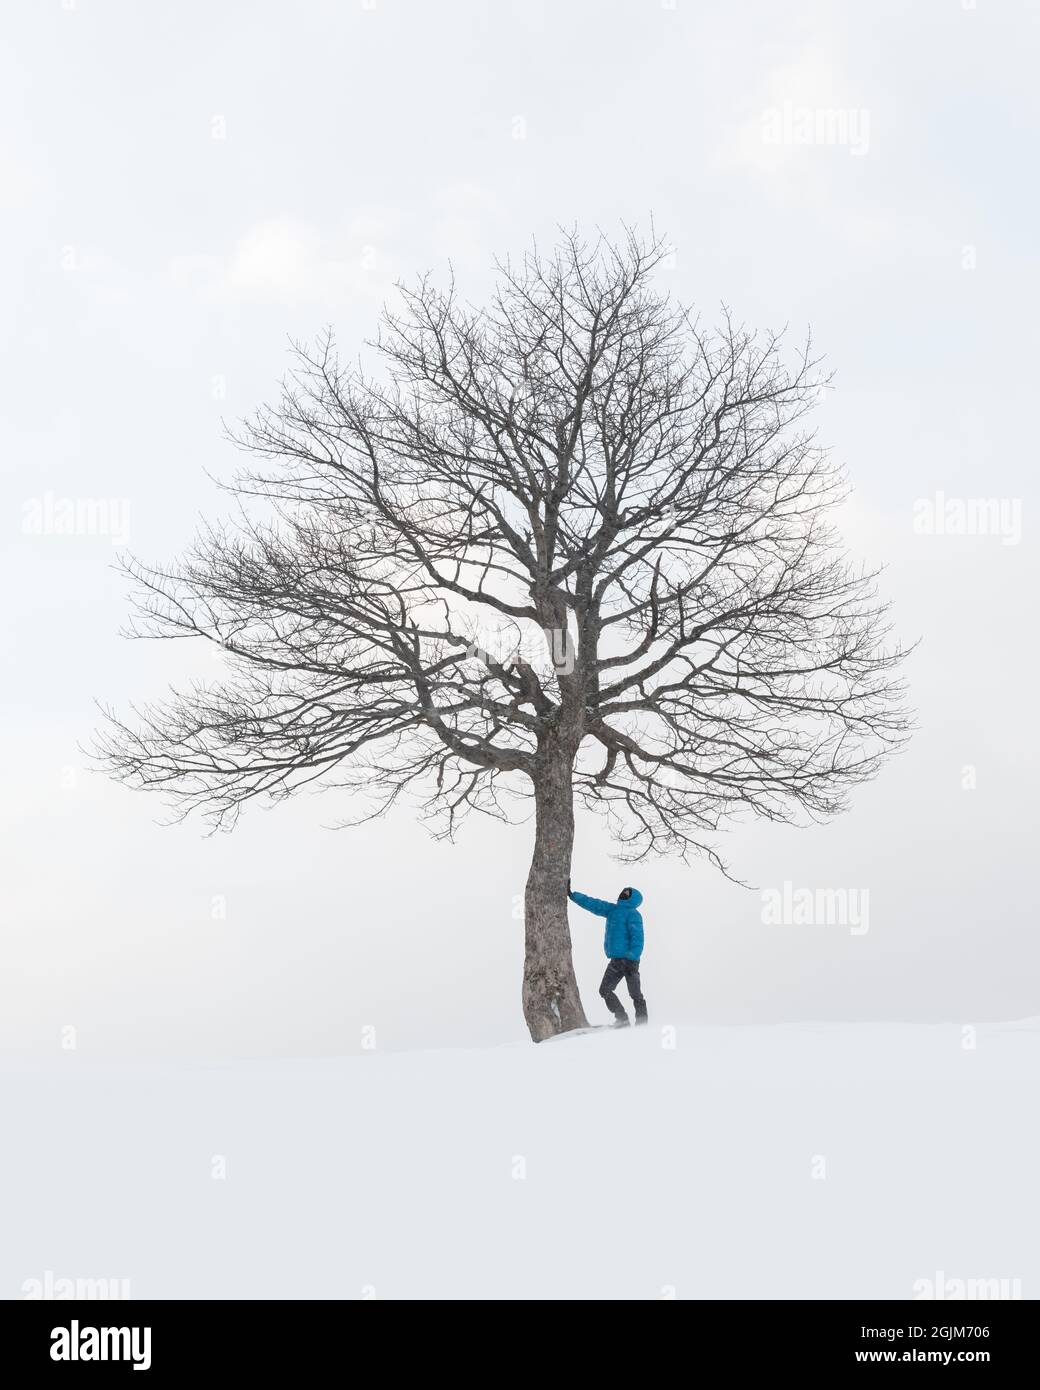 Erstaunliche Landschaft mit einem Mann in der Nähe von einsamen schneebedeckten Baum in einem Winterfeld. Minimalistische Szene bei bewölktem und nebligen Wetter Stockfoto